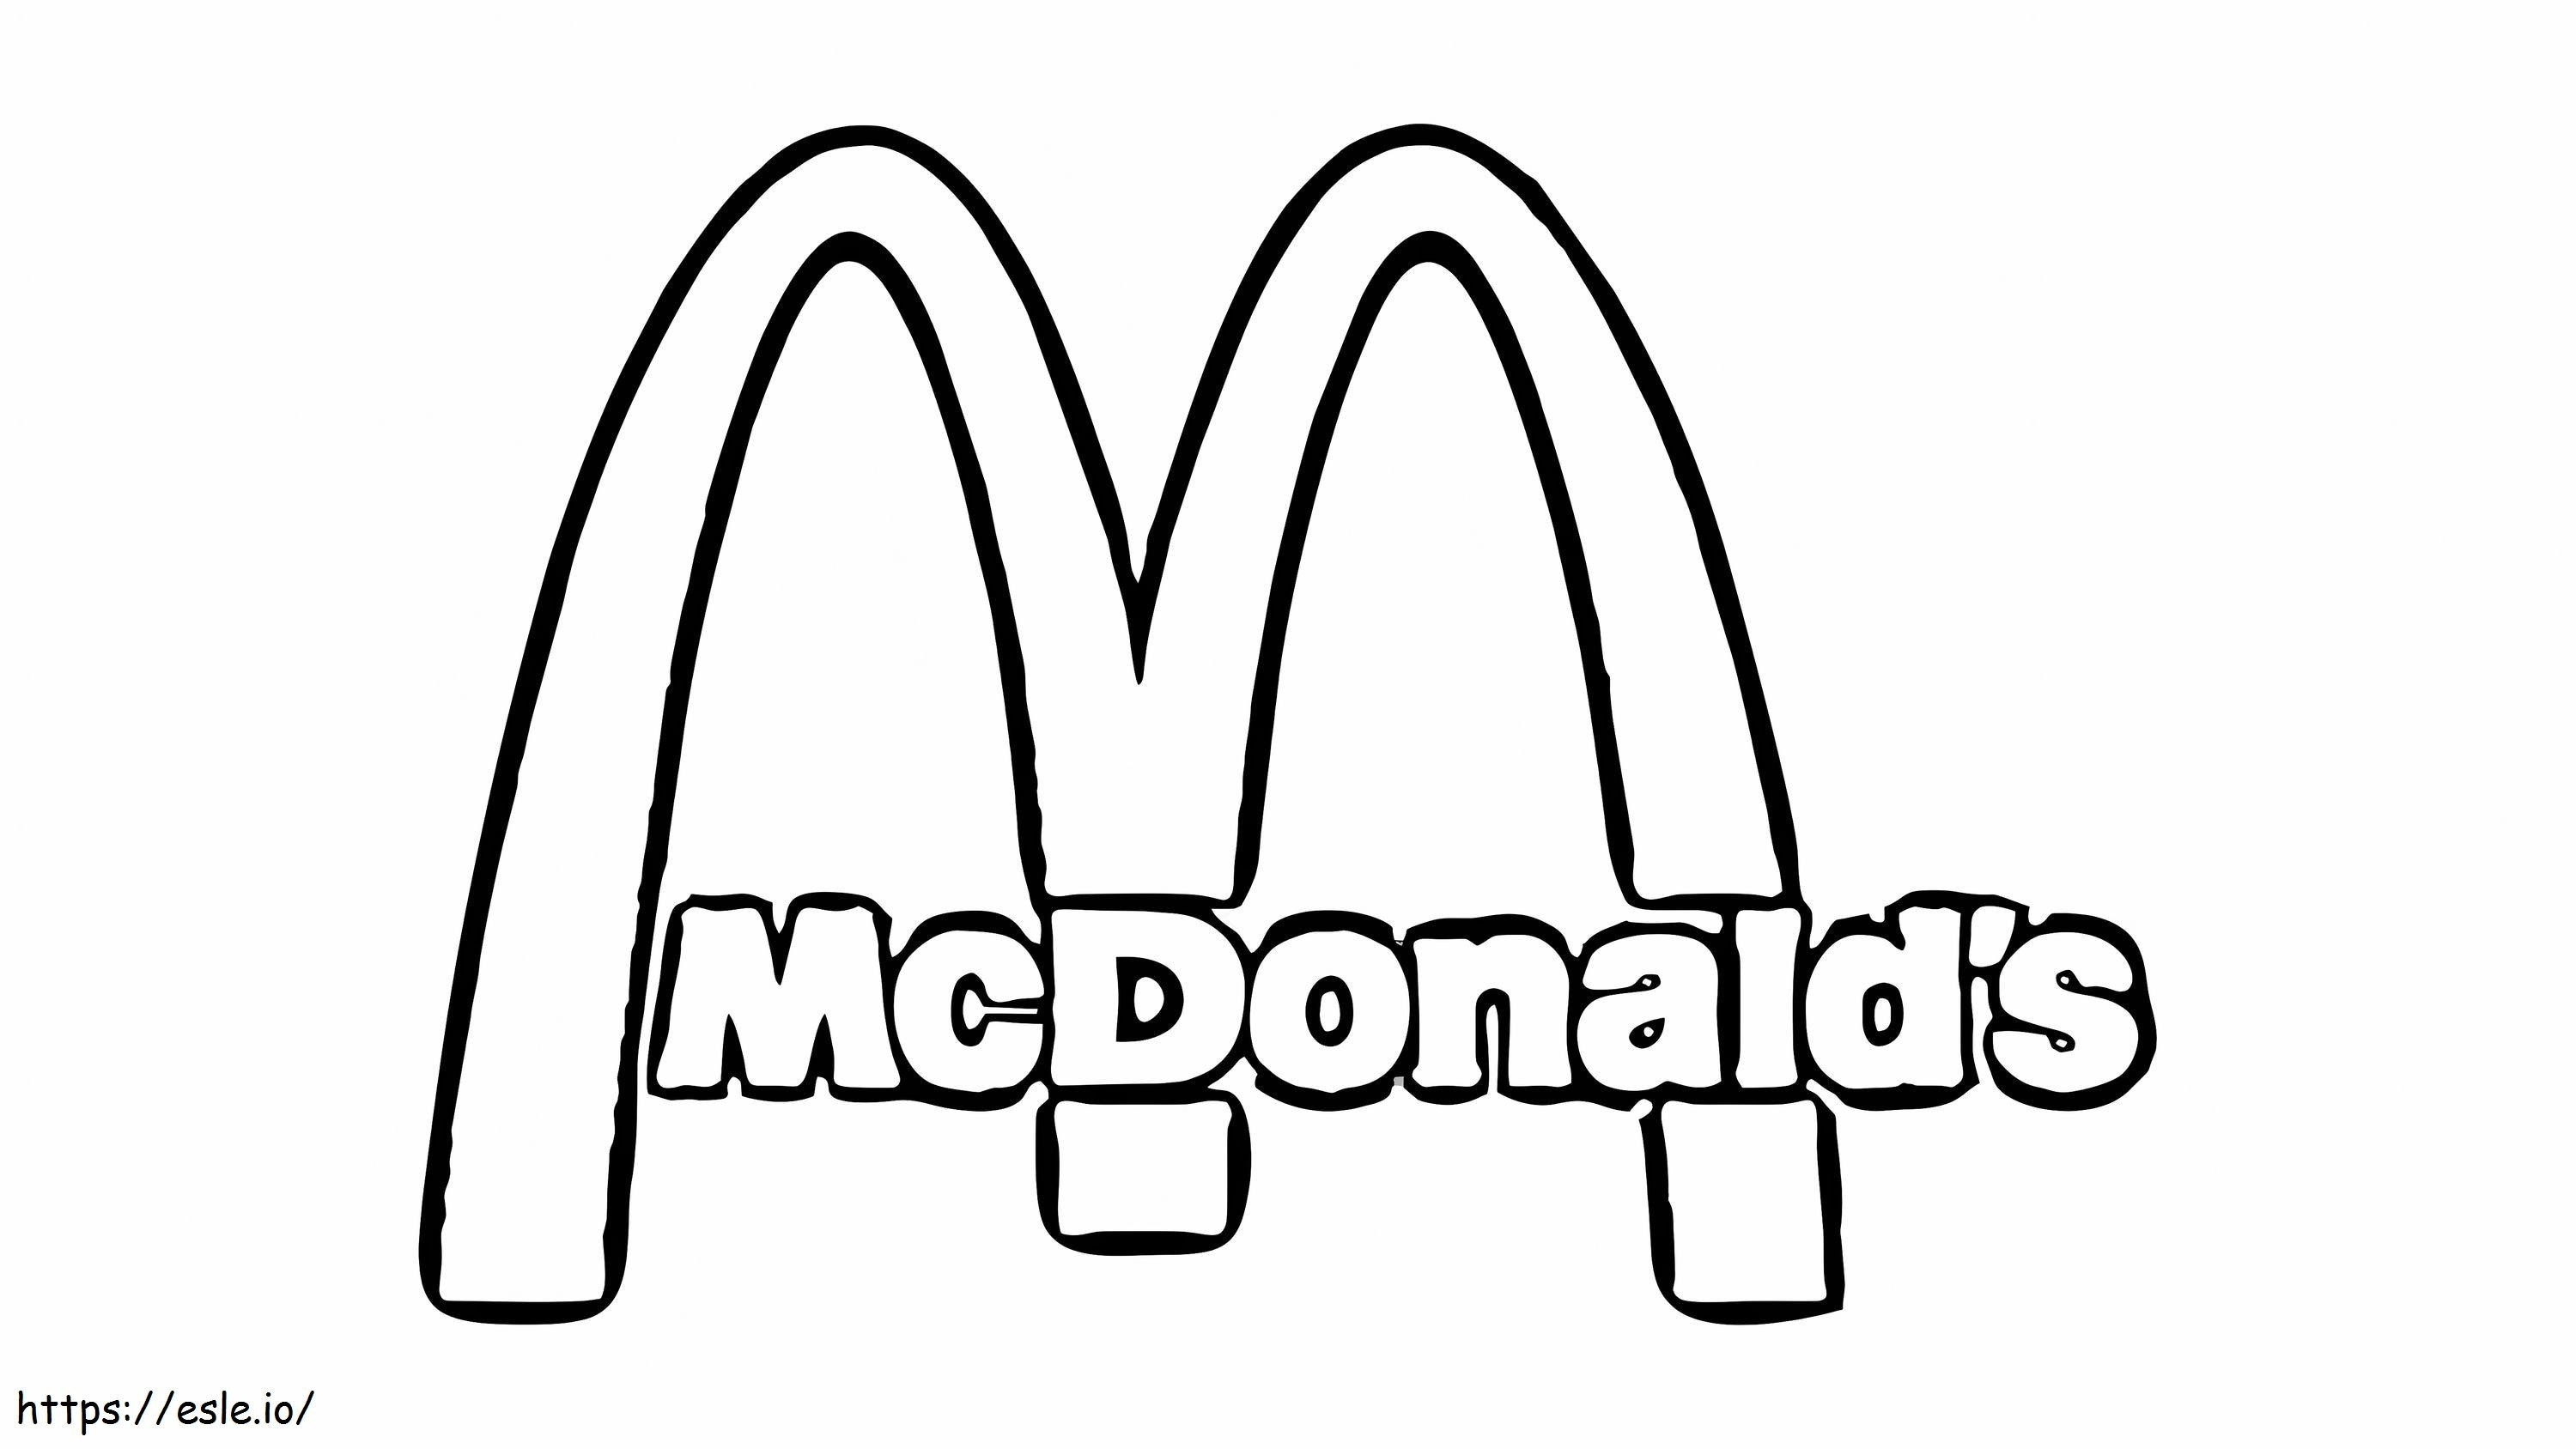 Logotipo do McDonald's para colorir